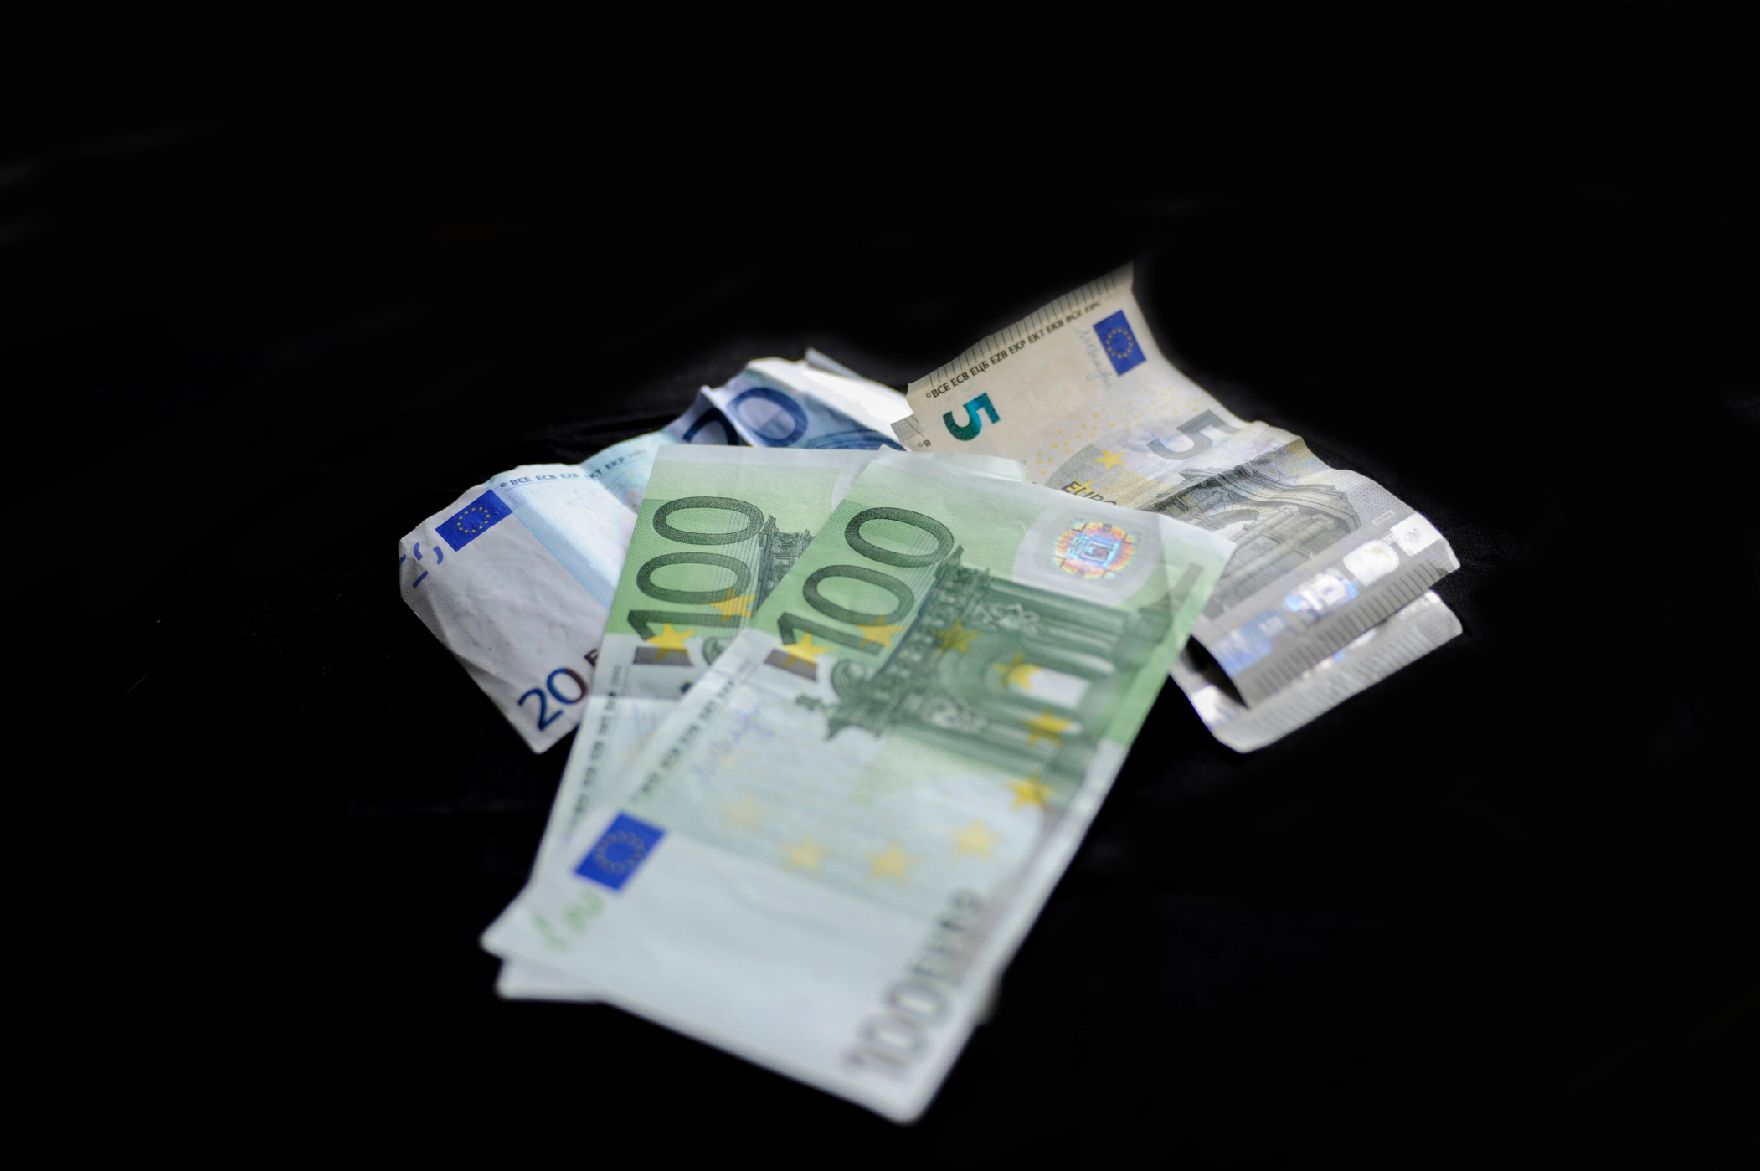 Verschiedene Eurogeldscheine. Schlagworte: Euro, Geld, Scheine, Wirtschaft